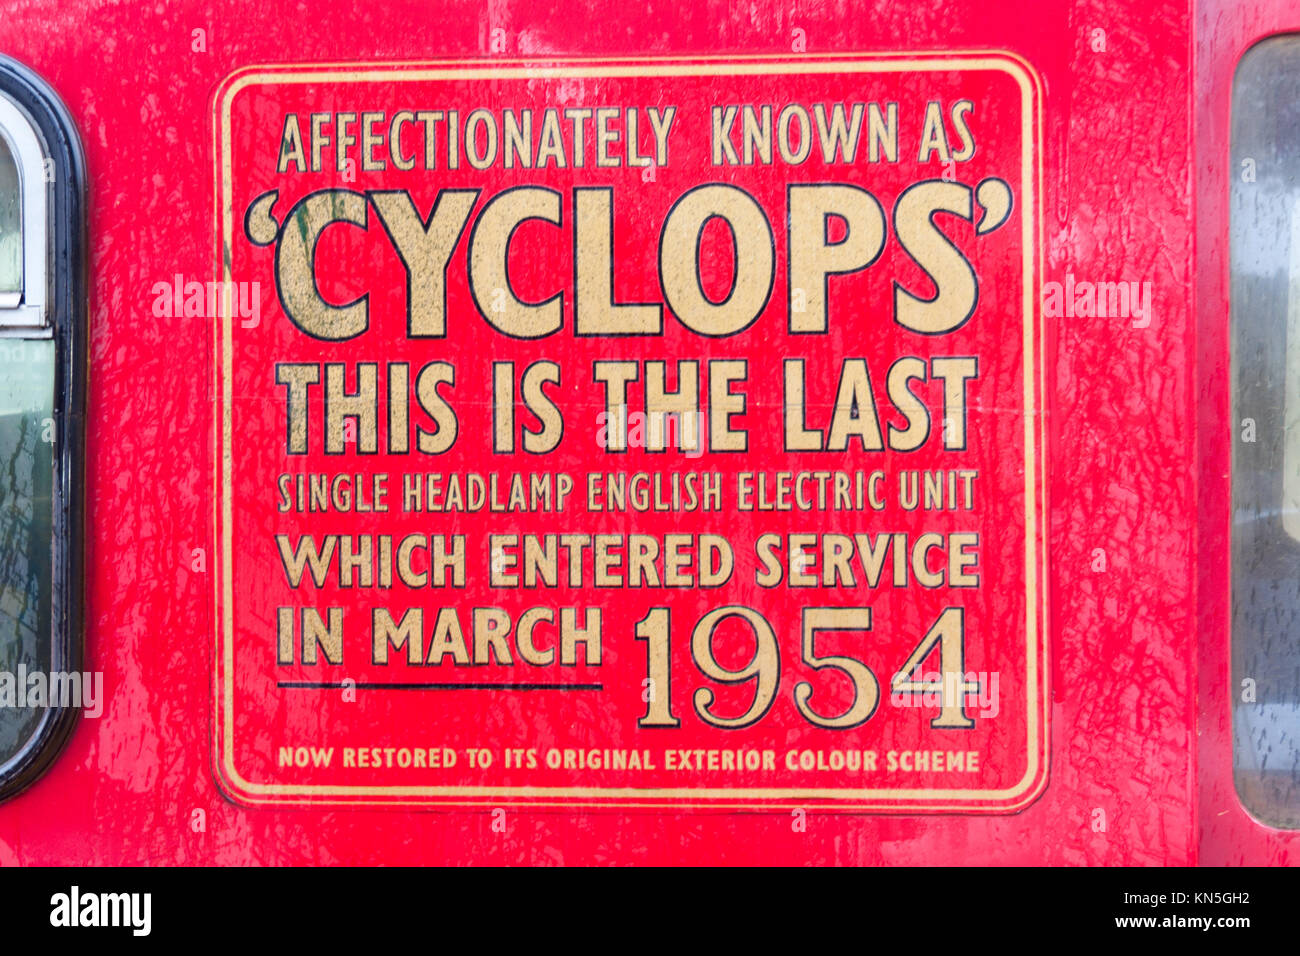 Cyclops - el último single faro inglés unidad eléctrica en servicio desde 1954, Wellington, Nueva Zelanda Foto de stock